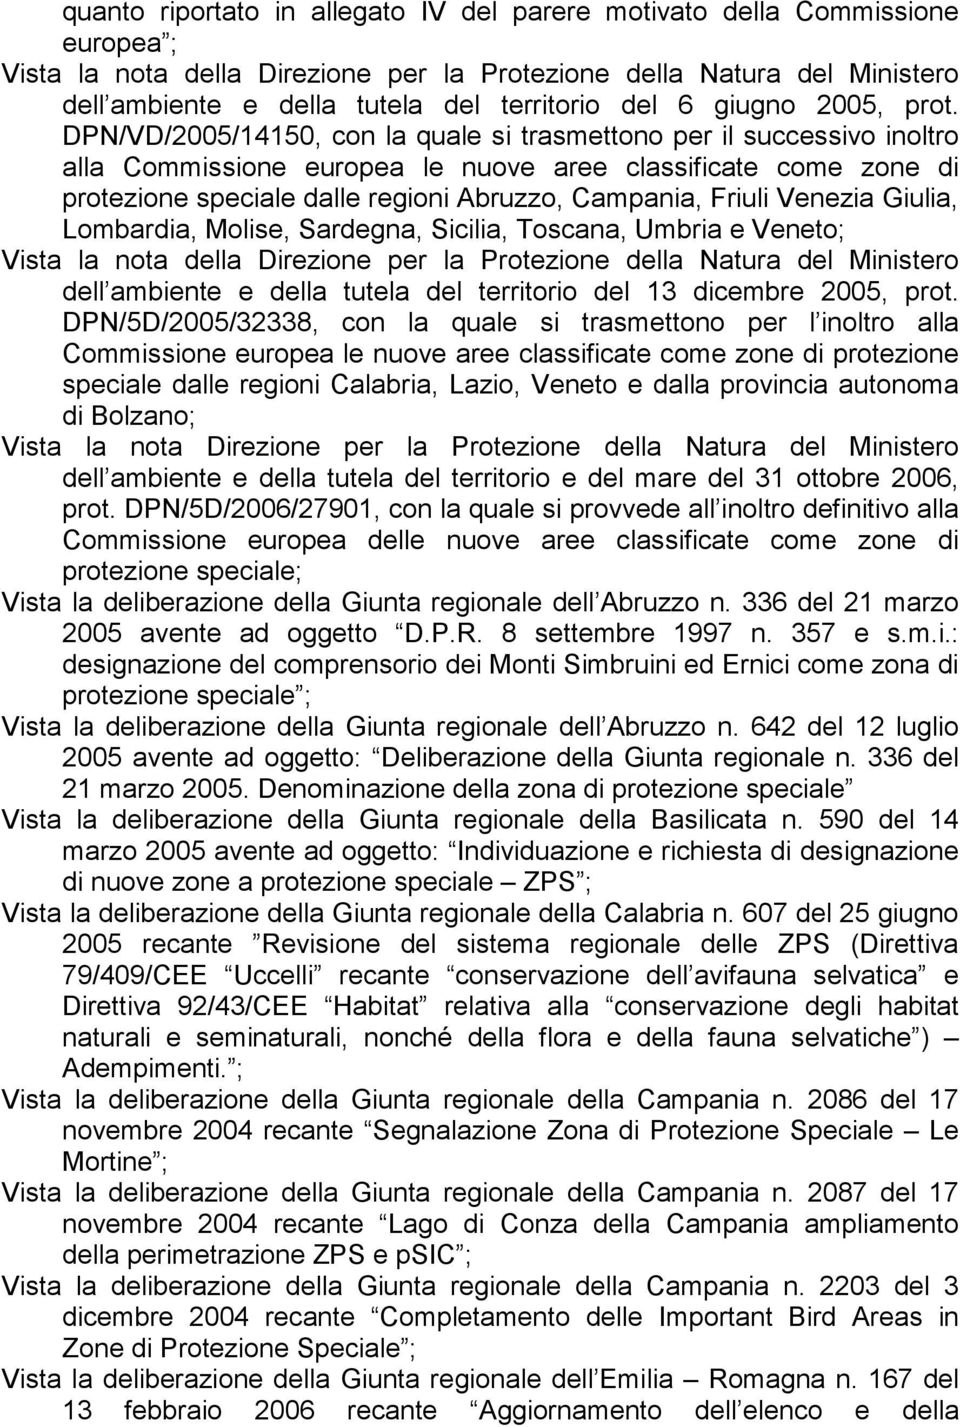 DPN/VD/2005/14150, con la quale si trasmettono per il successivo inoltro alla Commissione europea le nuove aree classificate come zone di protezione speciale dalle regioni Abruzzo, Campania, Friuli